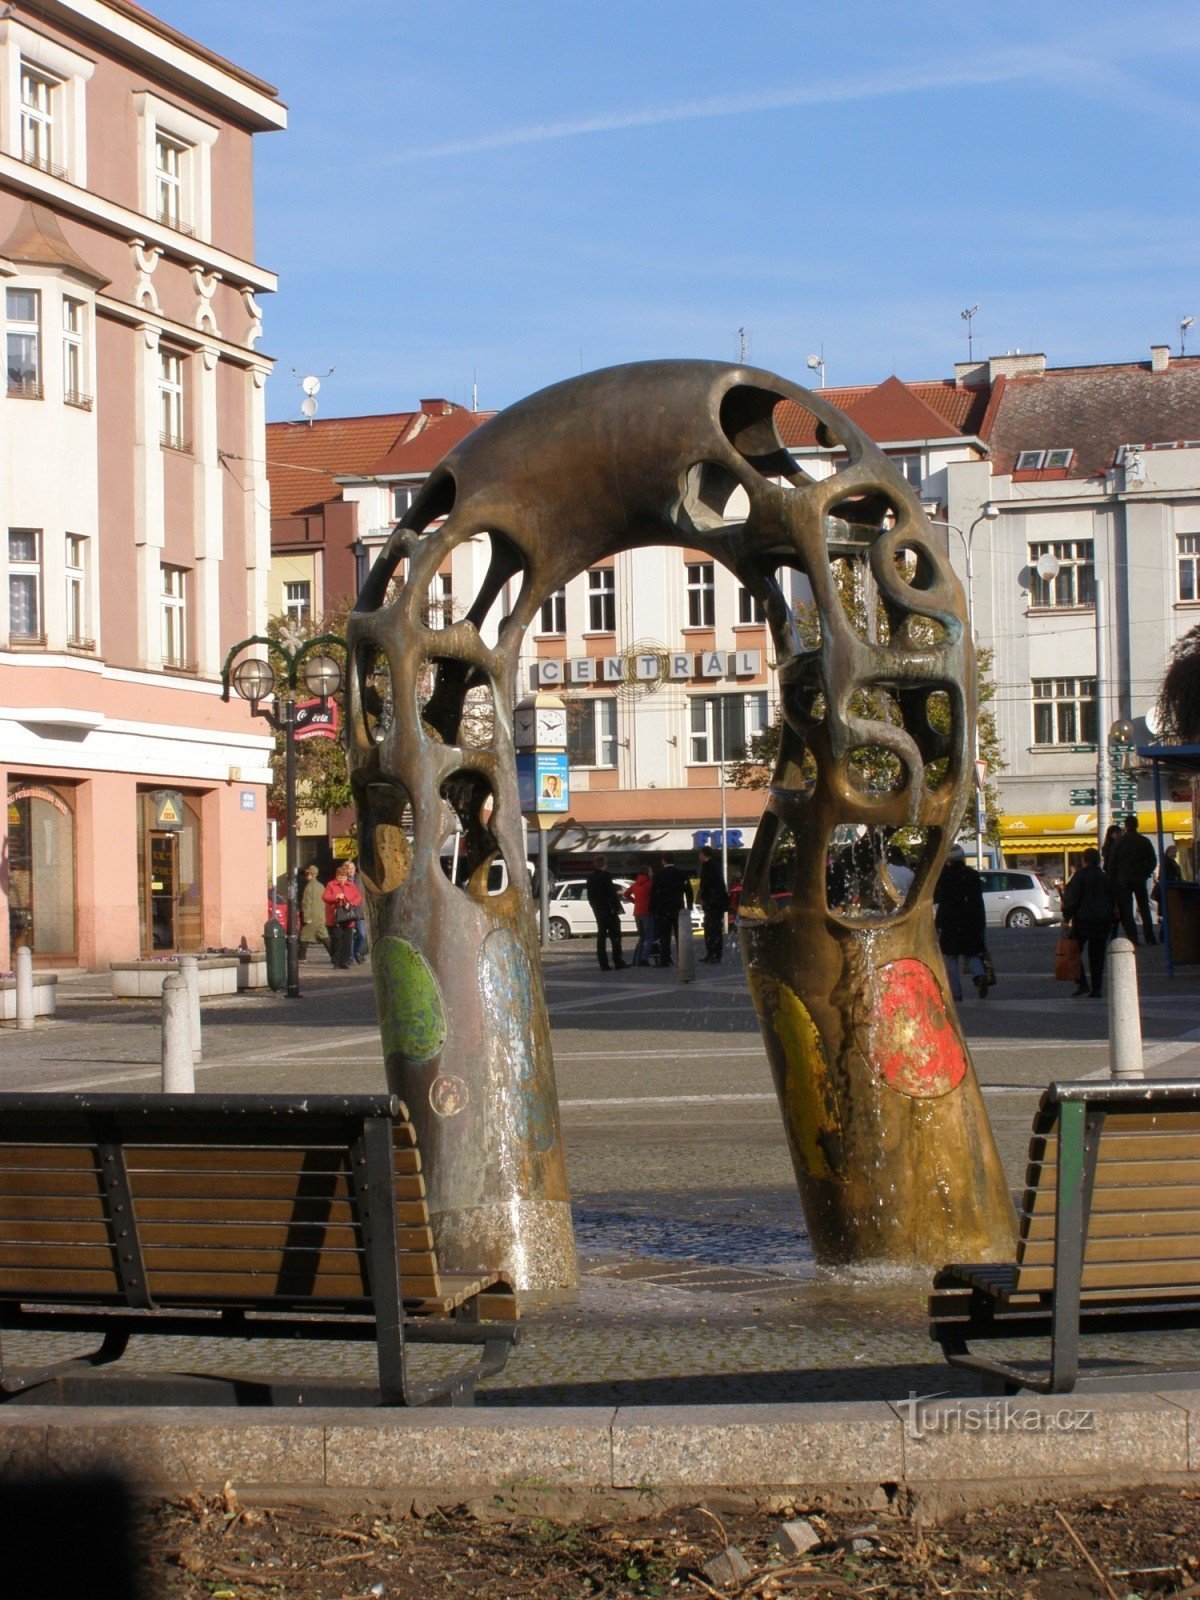 Градец Кралове - фонтан на площади Батка